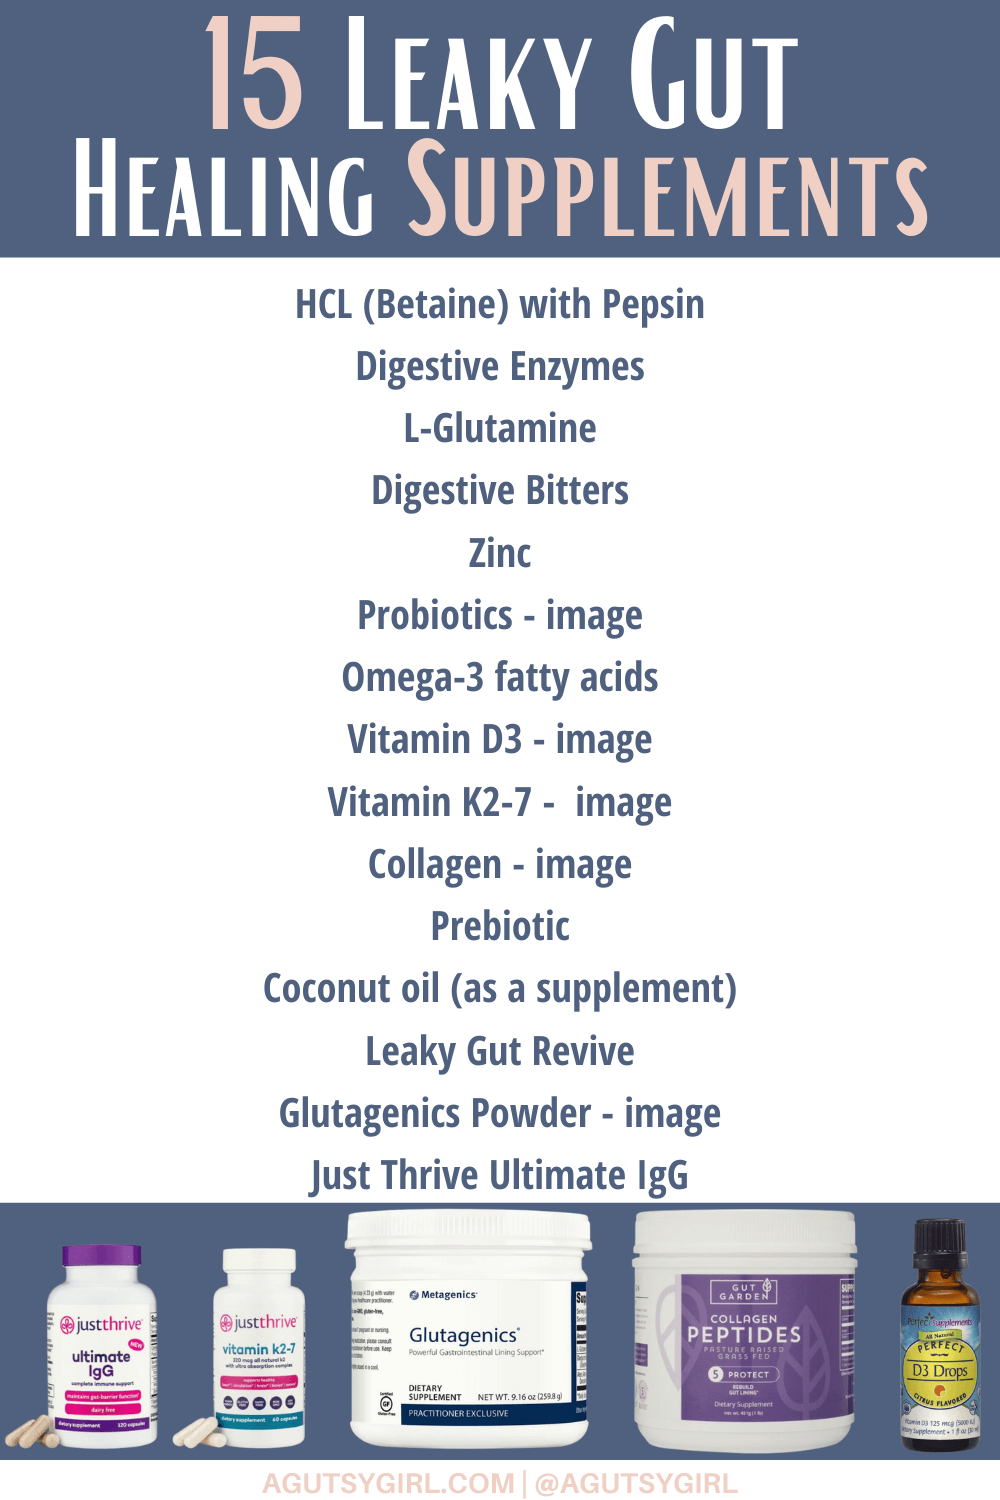 15 Leaky Gut Healing Supplements agutsygirl.com #leakygut #leakygutdiet #supplementsthatwork